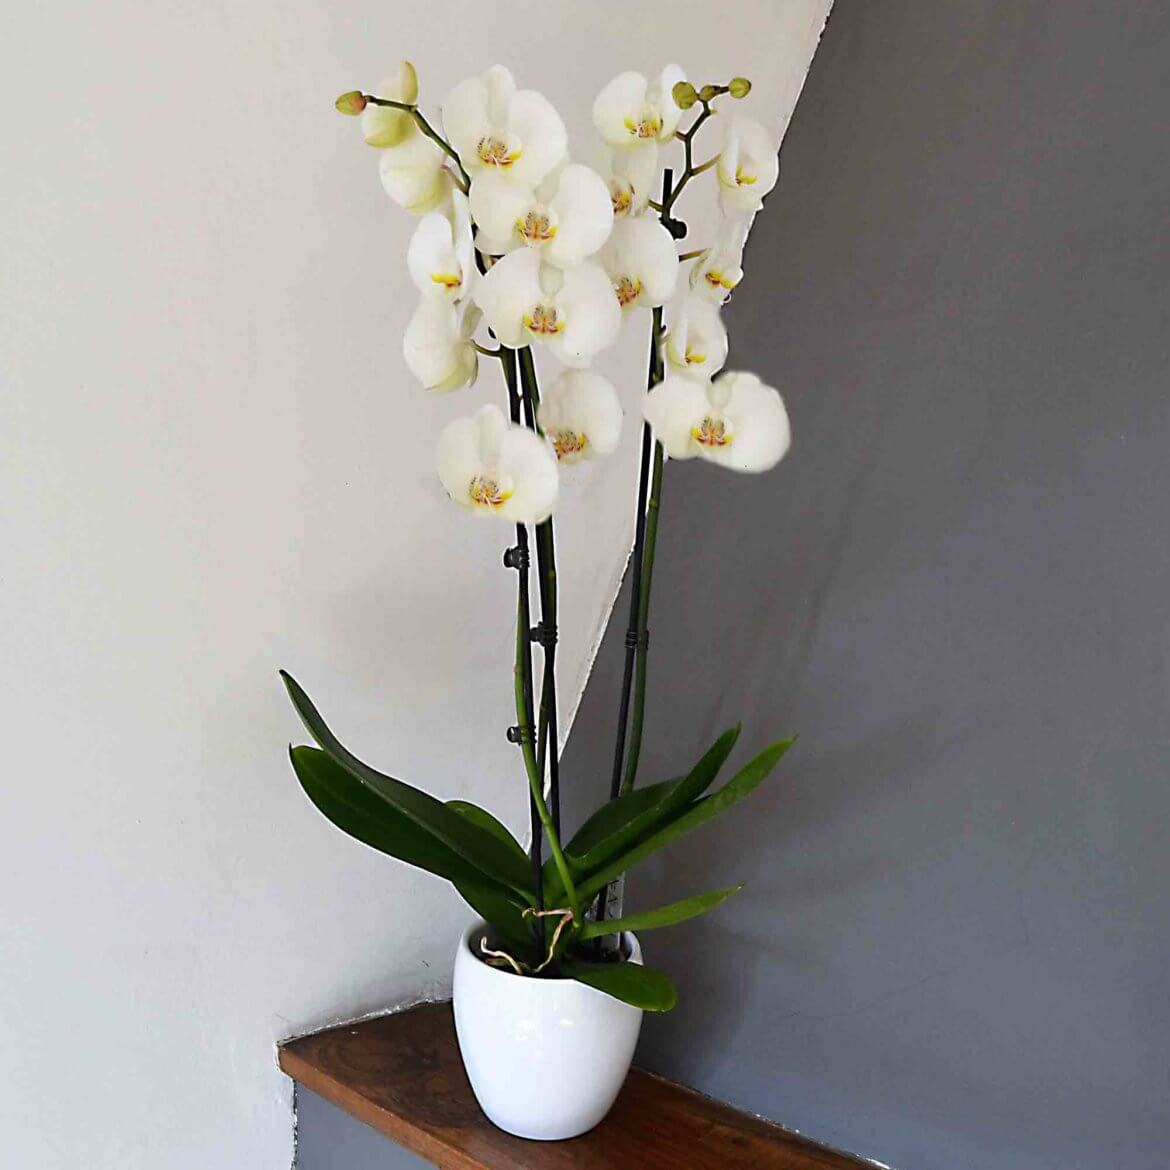 orquidea-blanca-madrid-domicilio